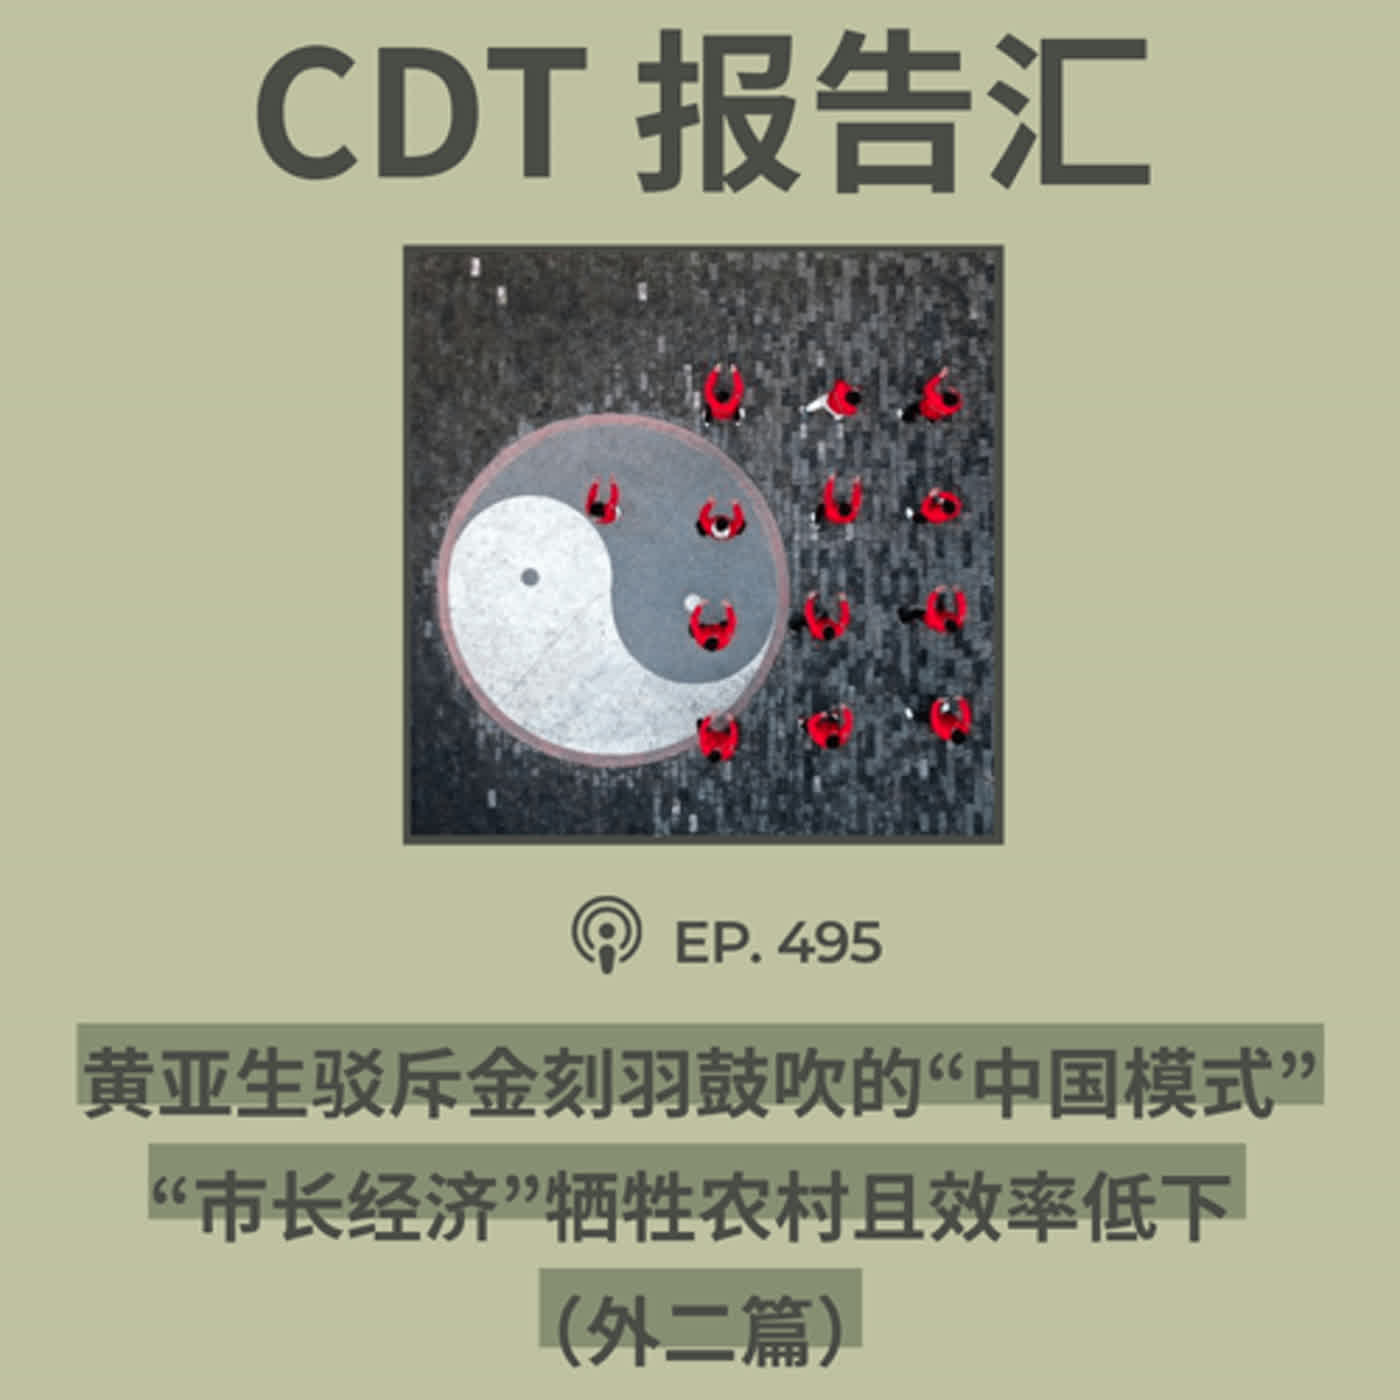 【第495期】CDT报告汇：黄亚生驳斥金刻羽鼓吹的“中国模式”，“市长经济”牺牲农村且效率低下 （外二篇）